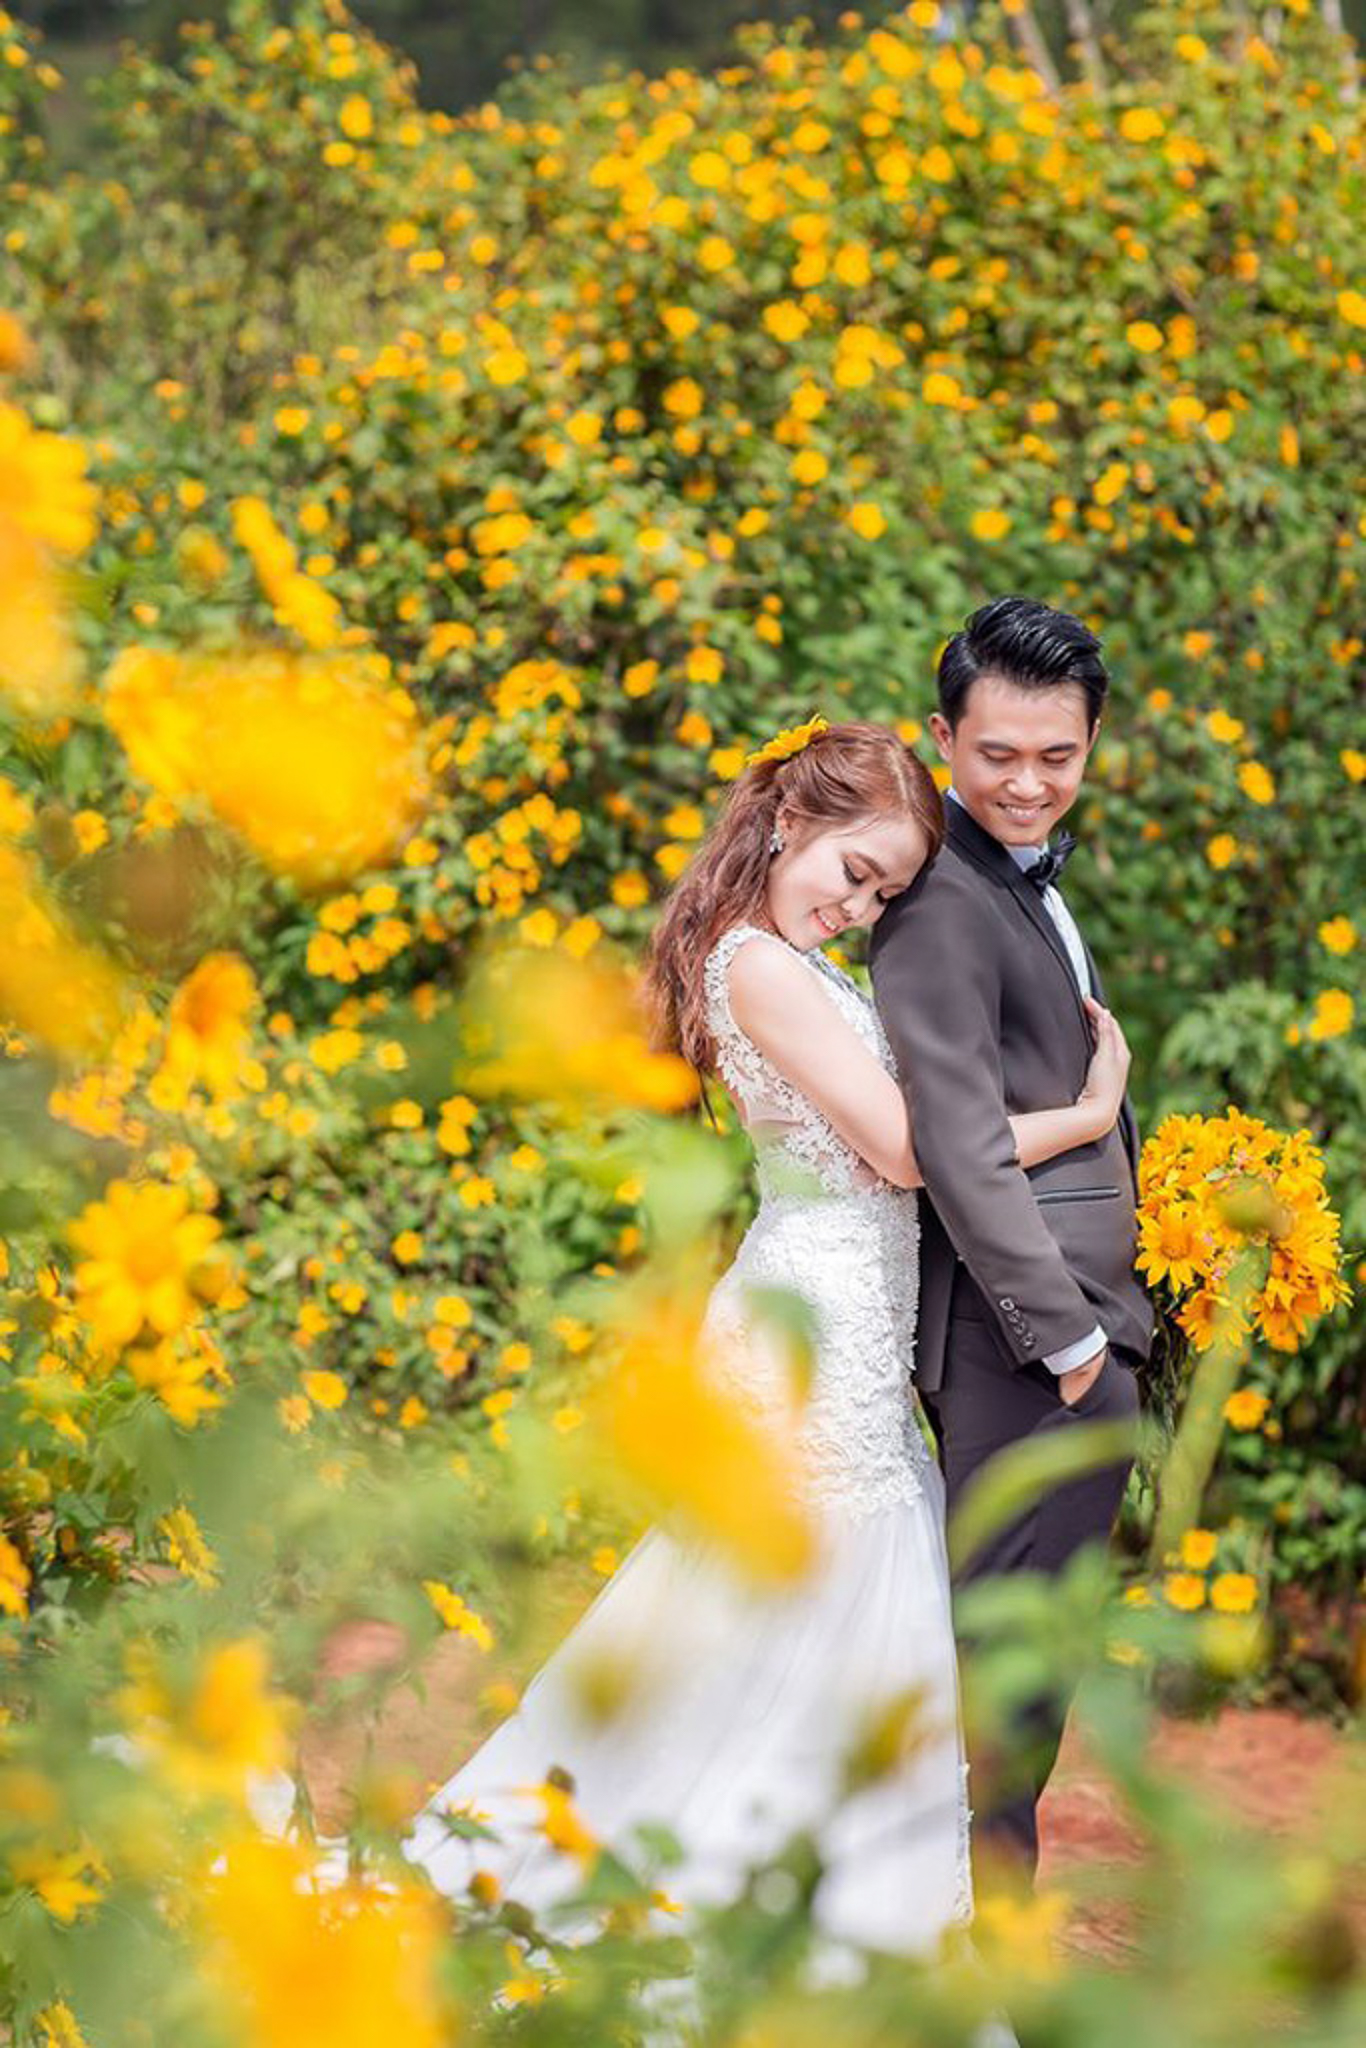 Chụp ảnh cưới với hoa hướng dương dại